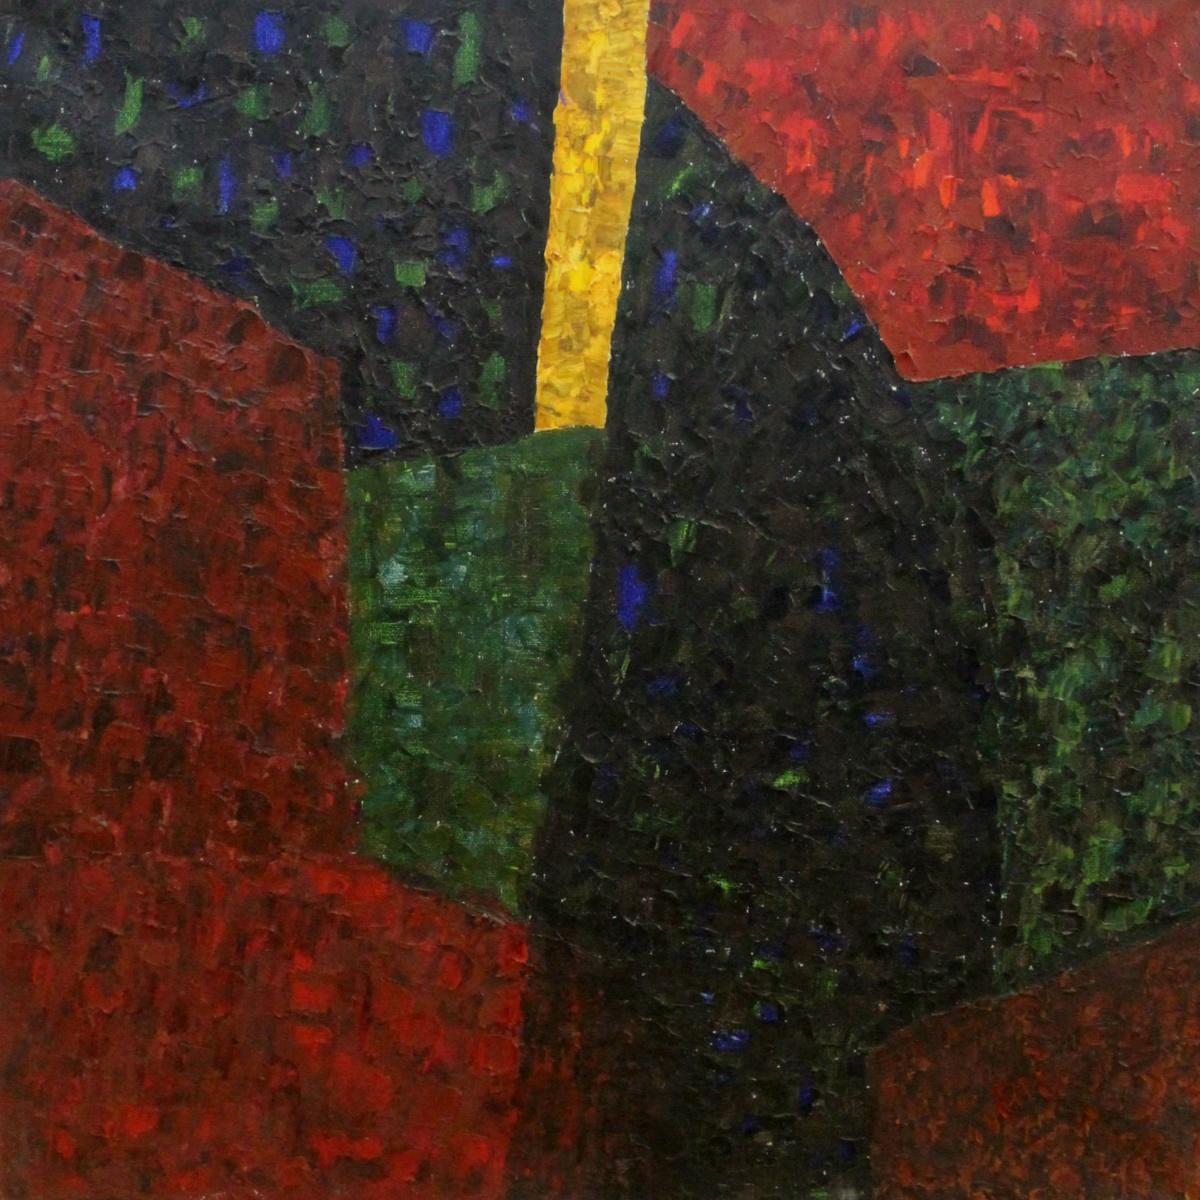 Abstract Painting Ellis Ostrowska - Arezzo, mon amour - XXIe siècle, peinture abstraite à l'huile, couleurs vibrantes, géométrique